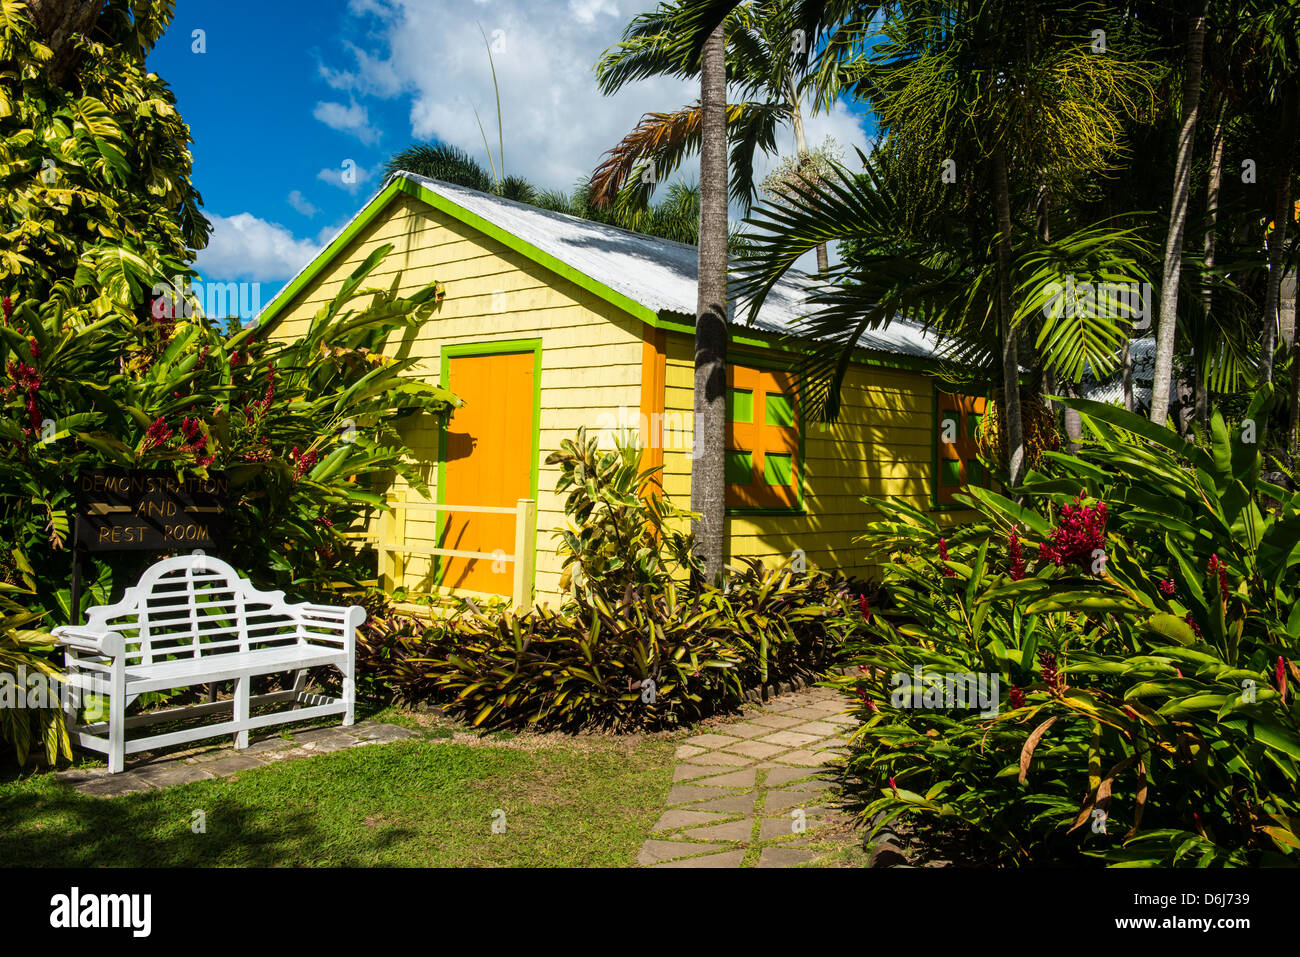 Romney Manor à Saint-kitts, Saint Kitts et Nevis, Iles sous le vent, Antilles, Caraïbes, Amérique Centrale Banque D'Images